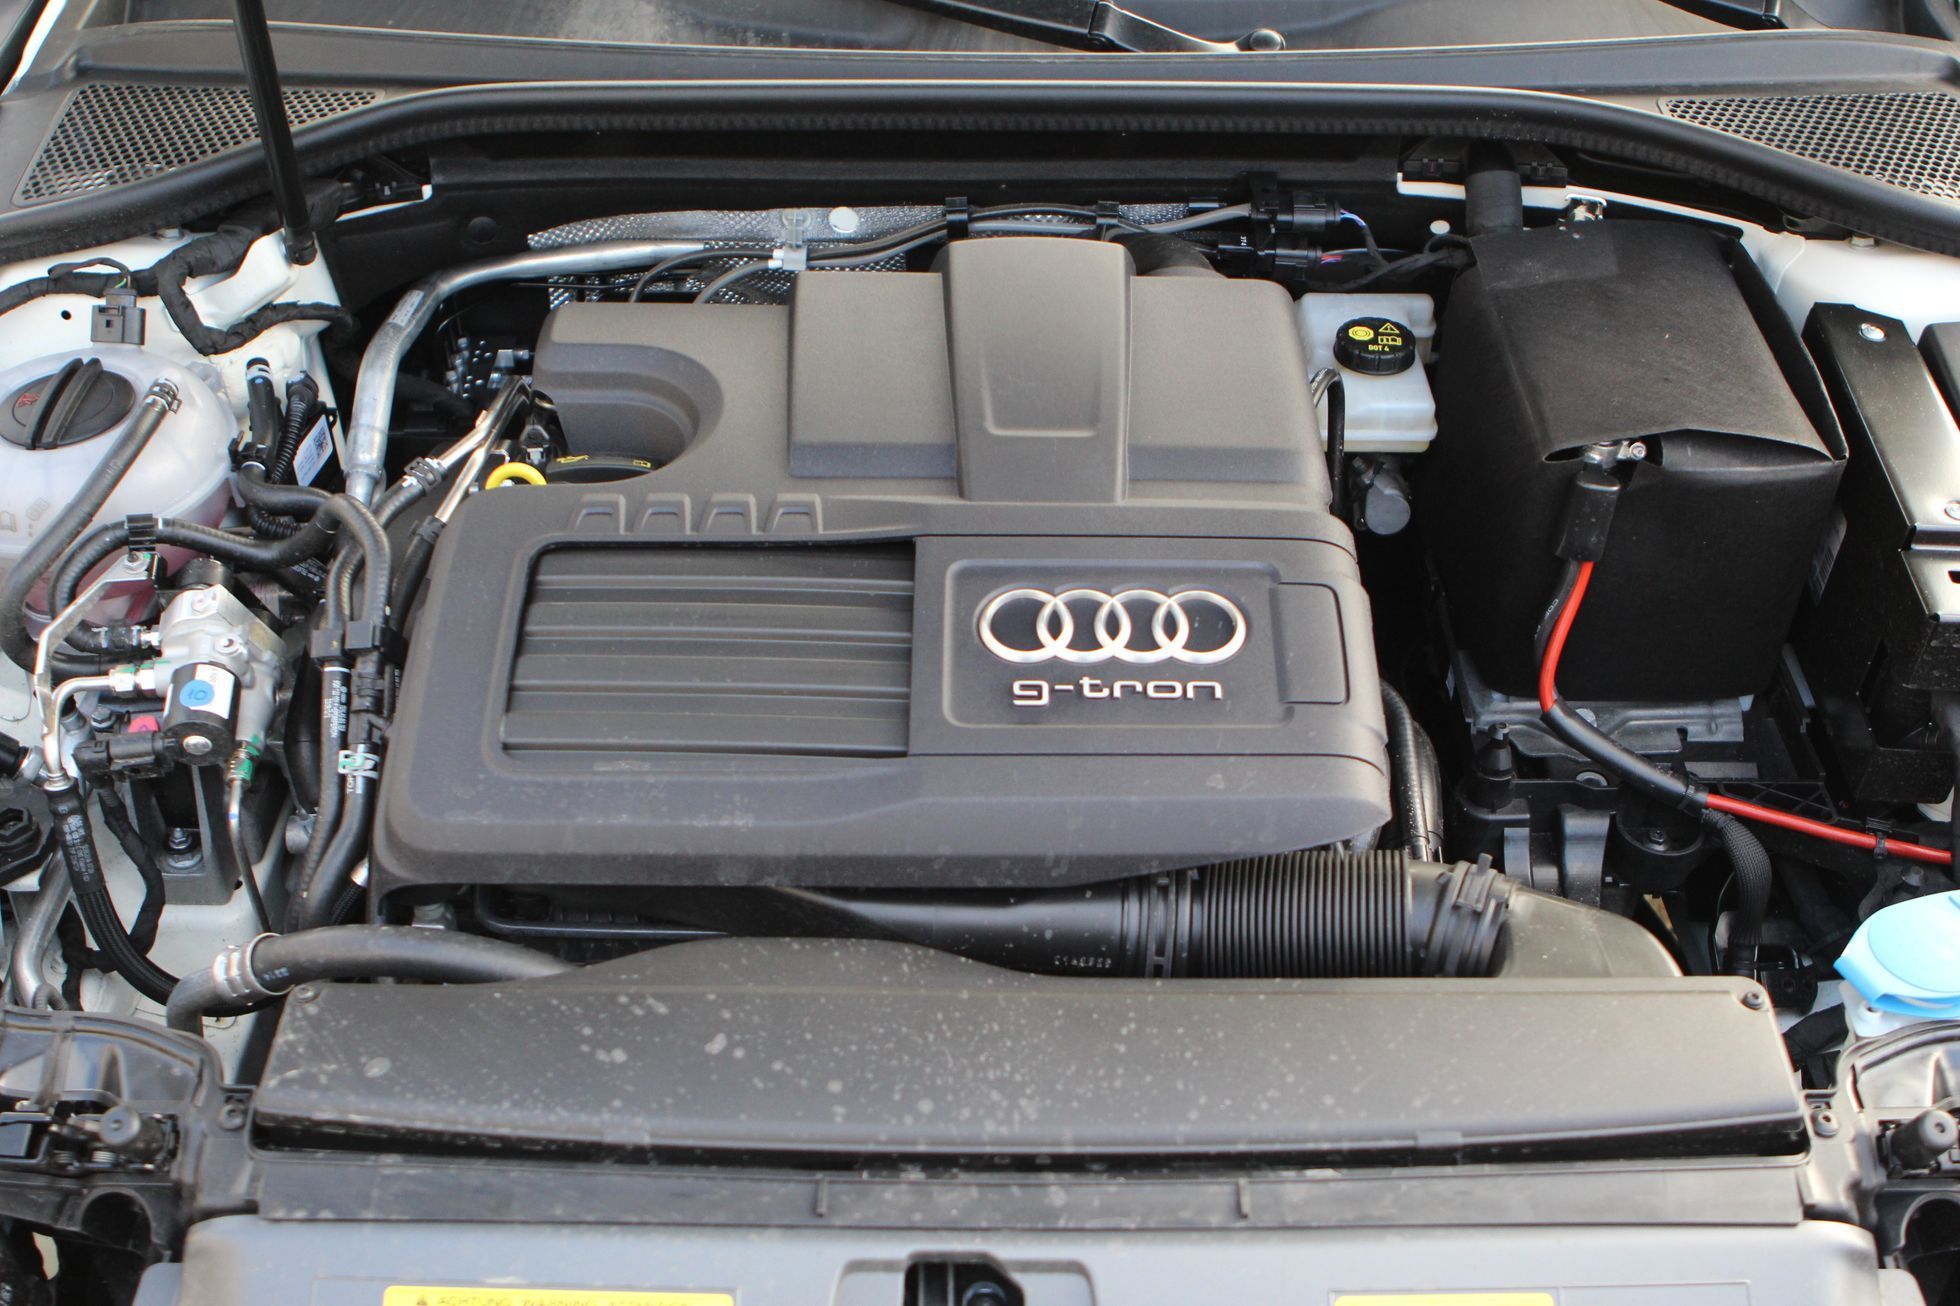 Audi A3 g-tron motor